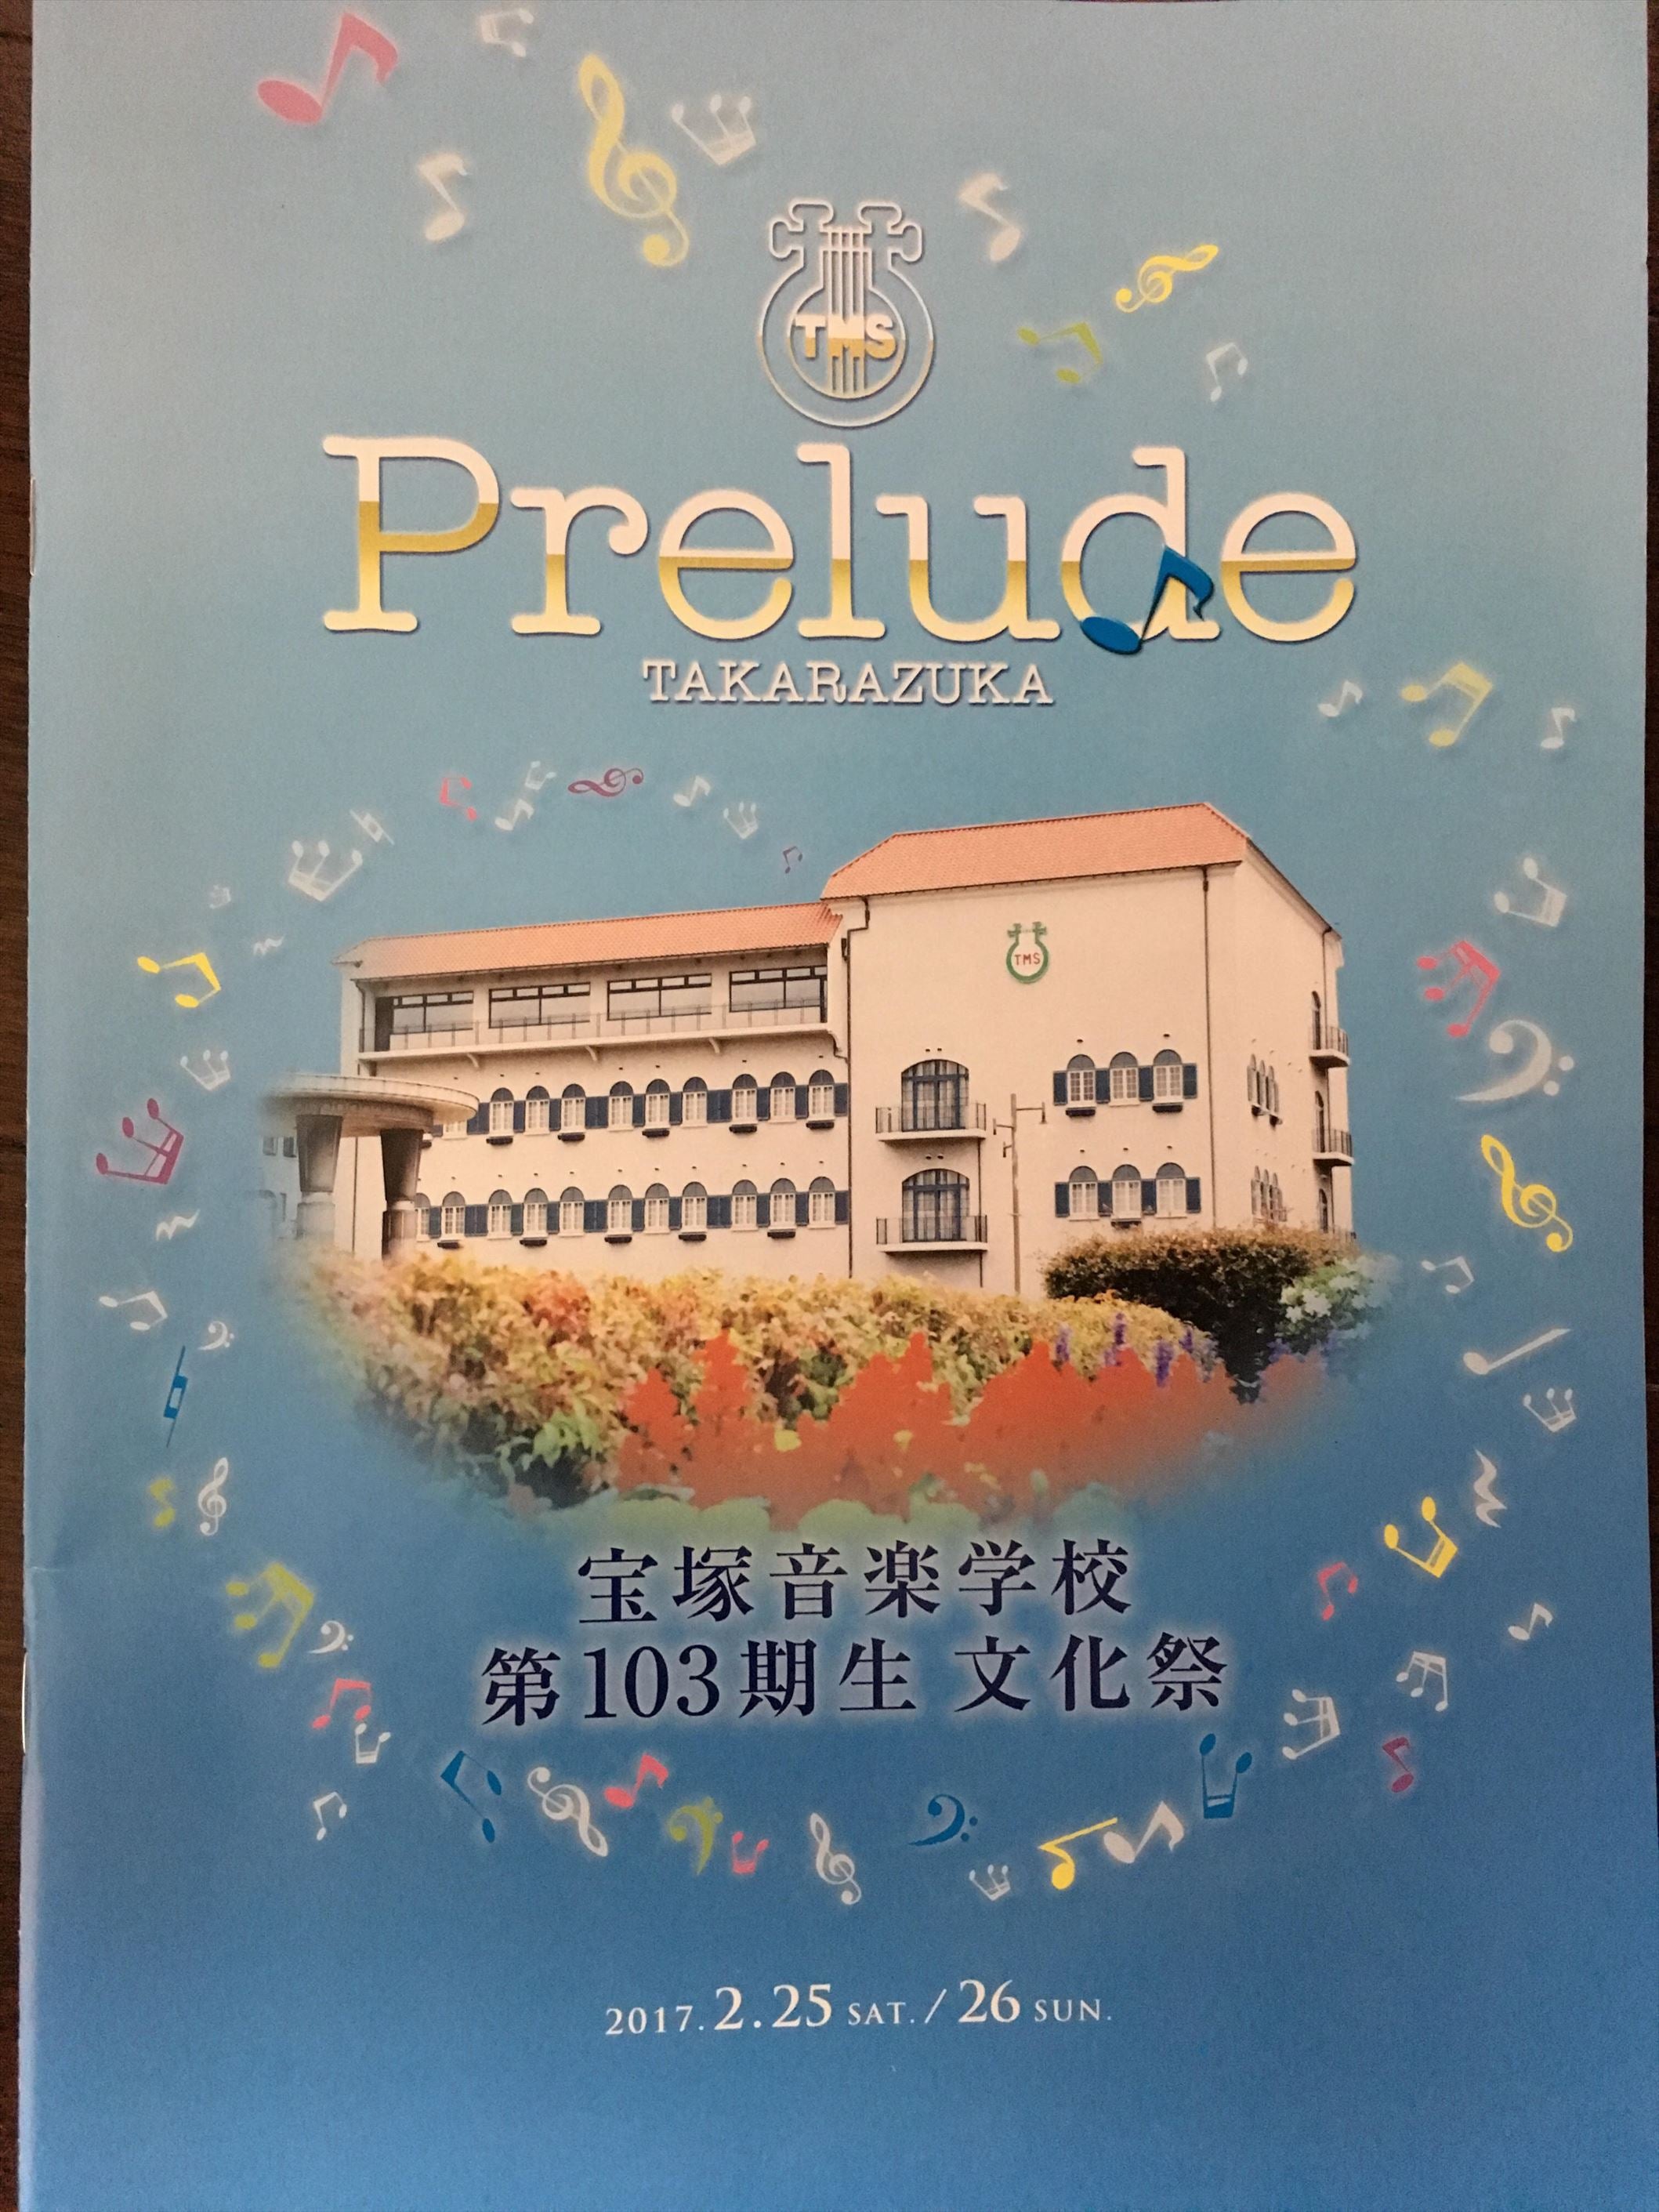 ☆106期☆宝塚音楽学校106期文化祭プログラム